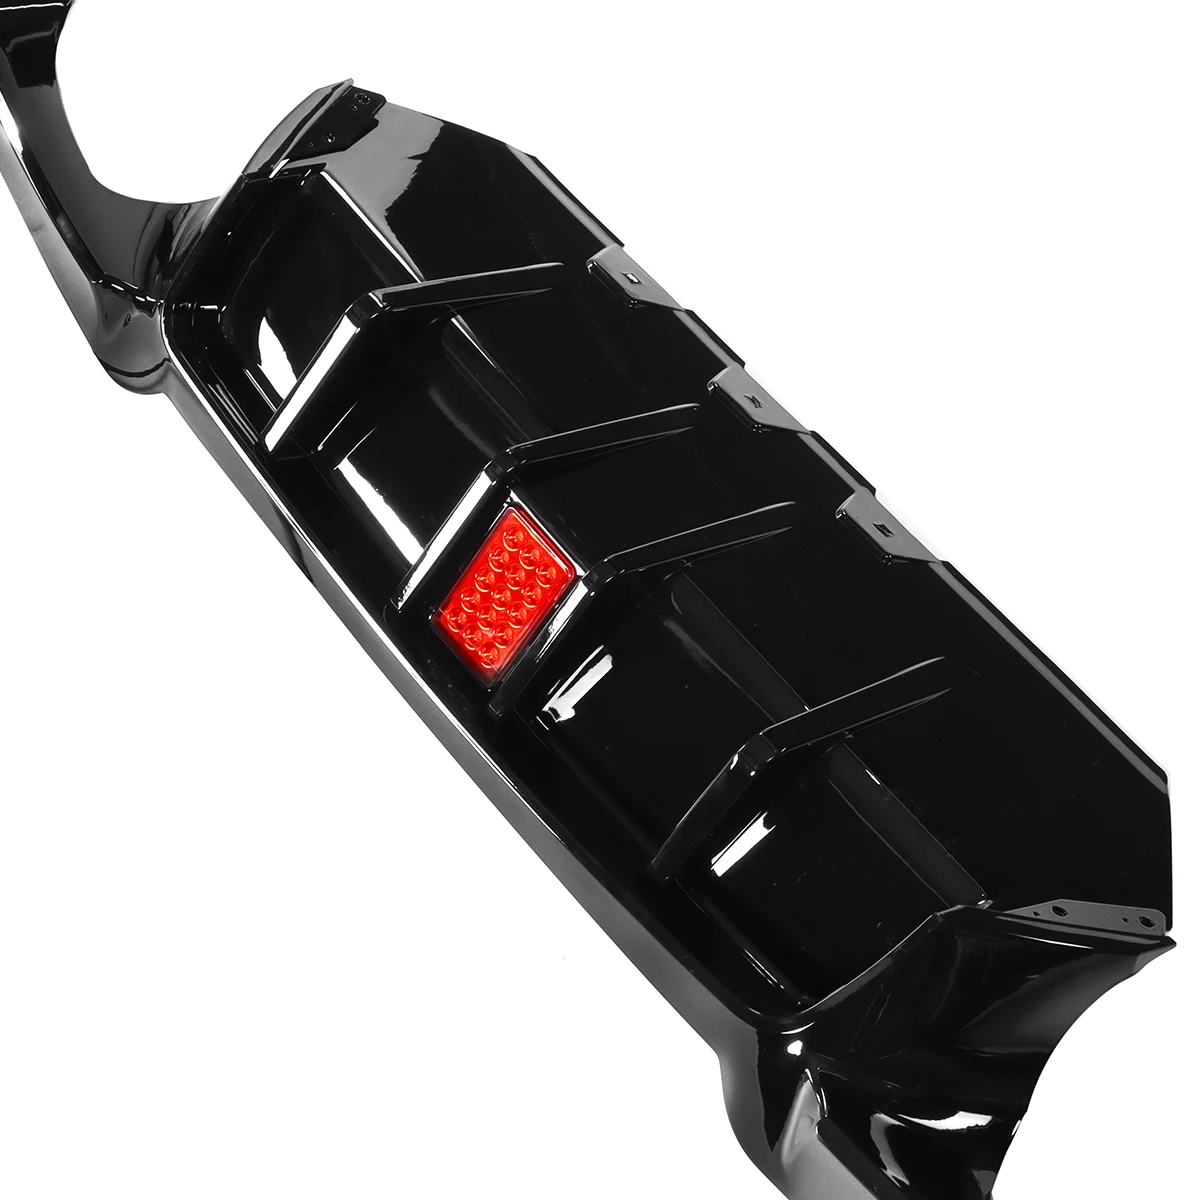 F10 Автомобильный Диффузор Заднего Бампера Для Губ Со Светодиодным Стоп-Сигналом Для BMW F10 528i 530i M Sport 2010-2016, Спойлер заднего Бампера, Сплиттер для Губ 3